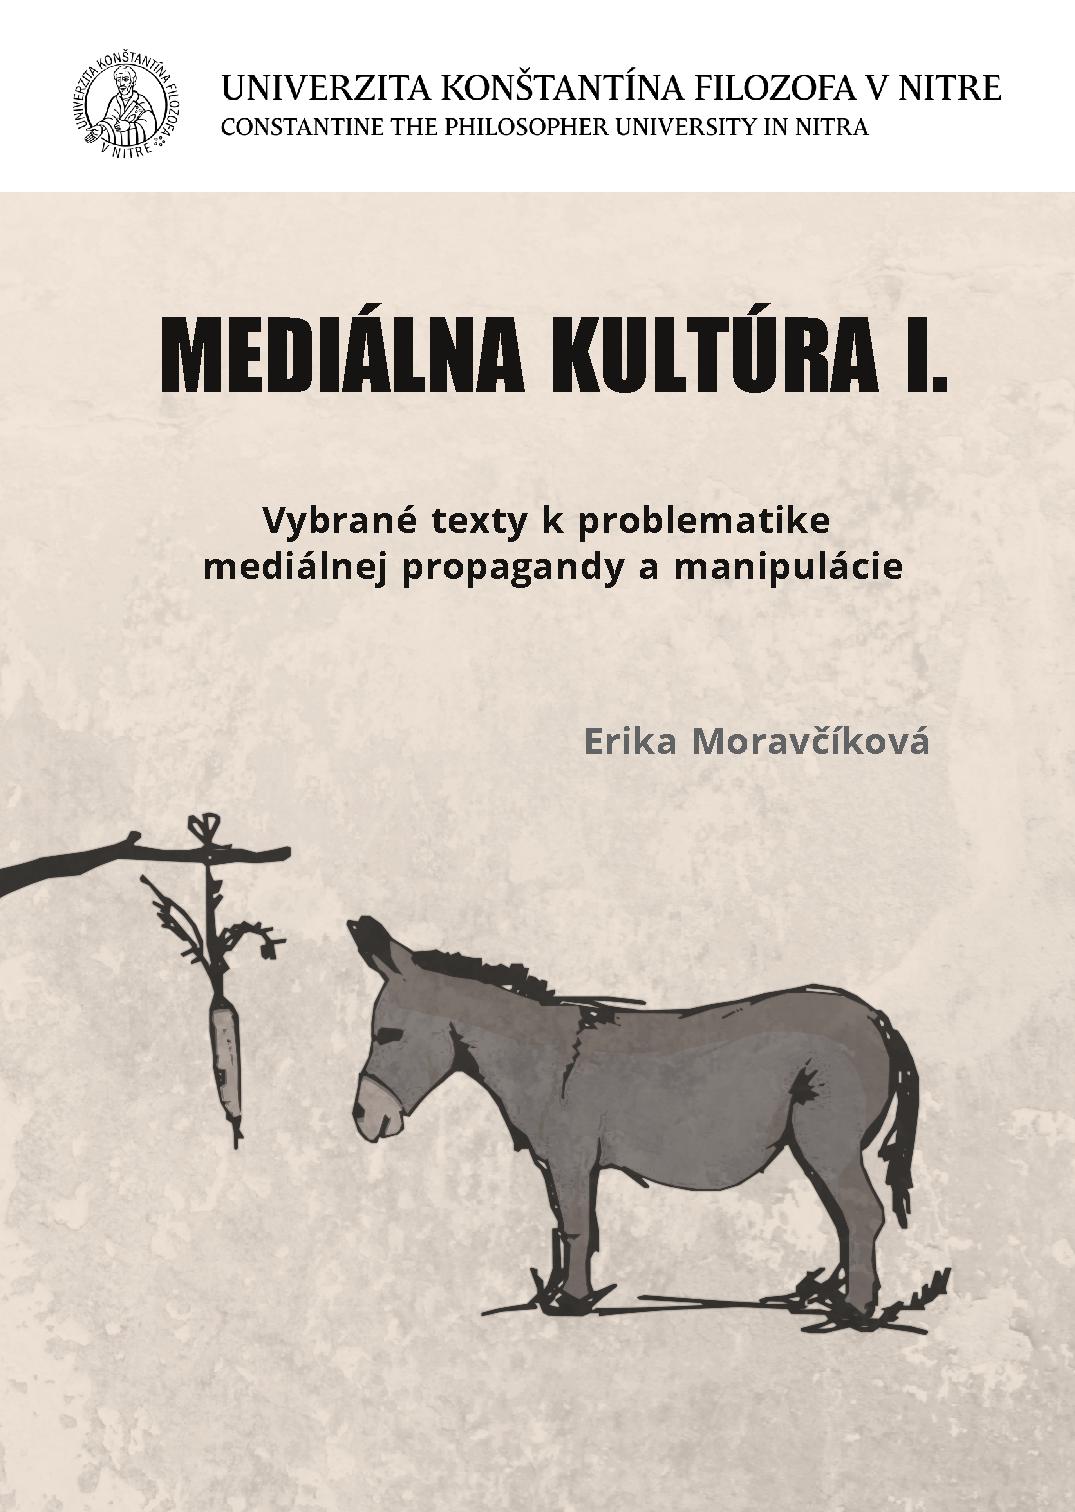 Mediálna kultúra I. - Vybrané texty k problematike mediálnej propagandy a manipulácie